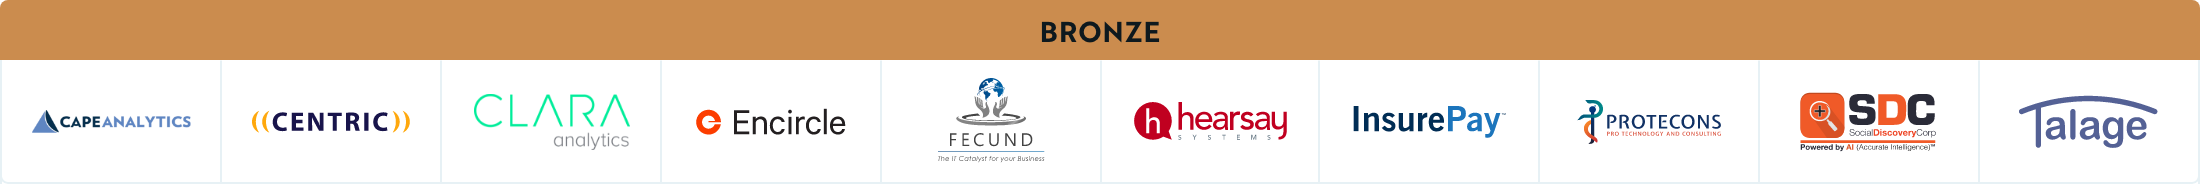 Sponsors-Bronze (1).png